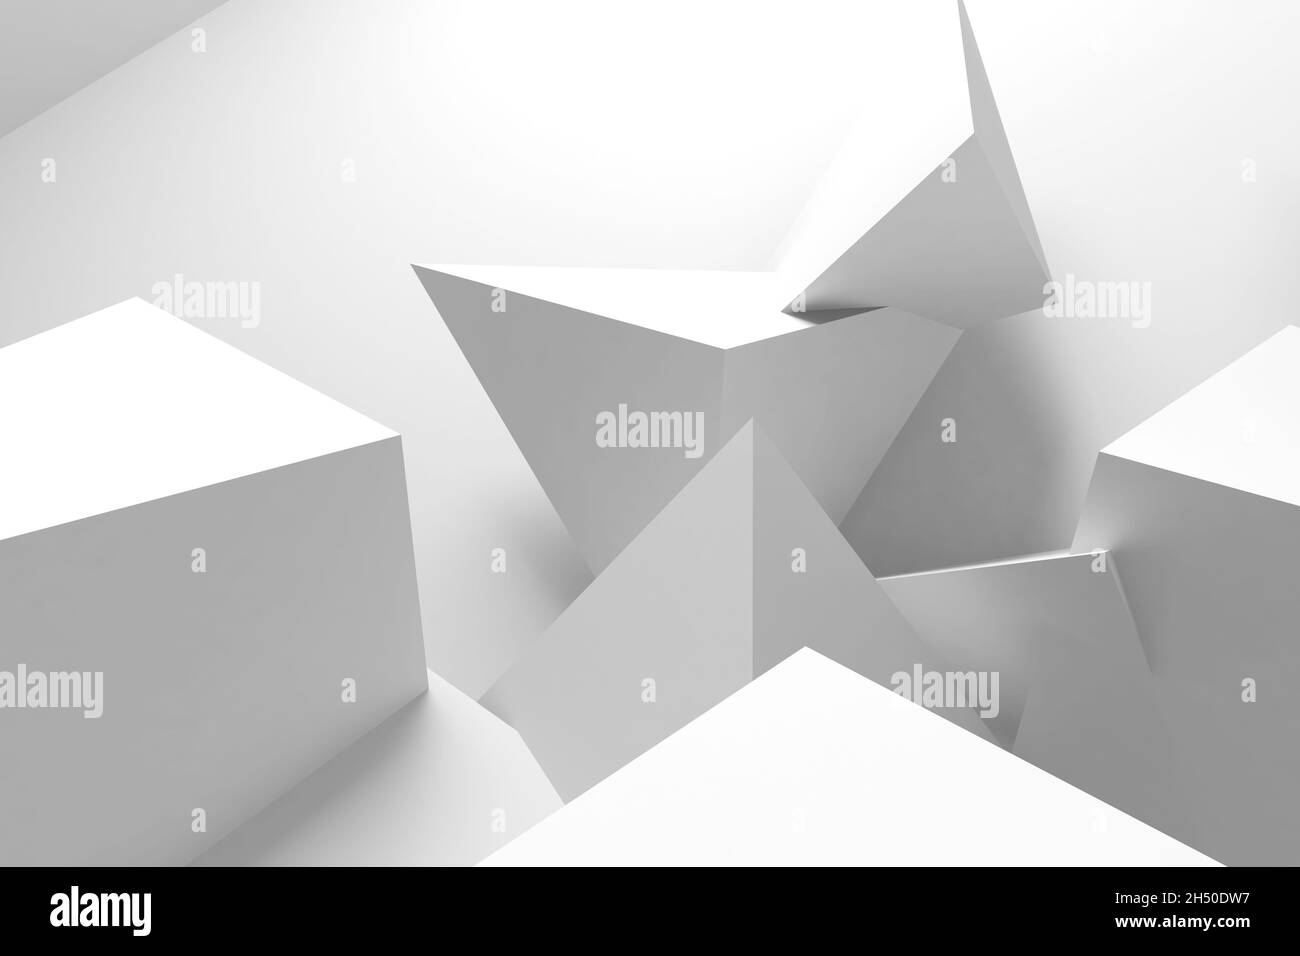 Arrière-plan géométrique abstrait, objets triangulaires blancs avec ombres douces.illustration de rendu 3d Banque D'Images